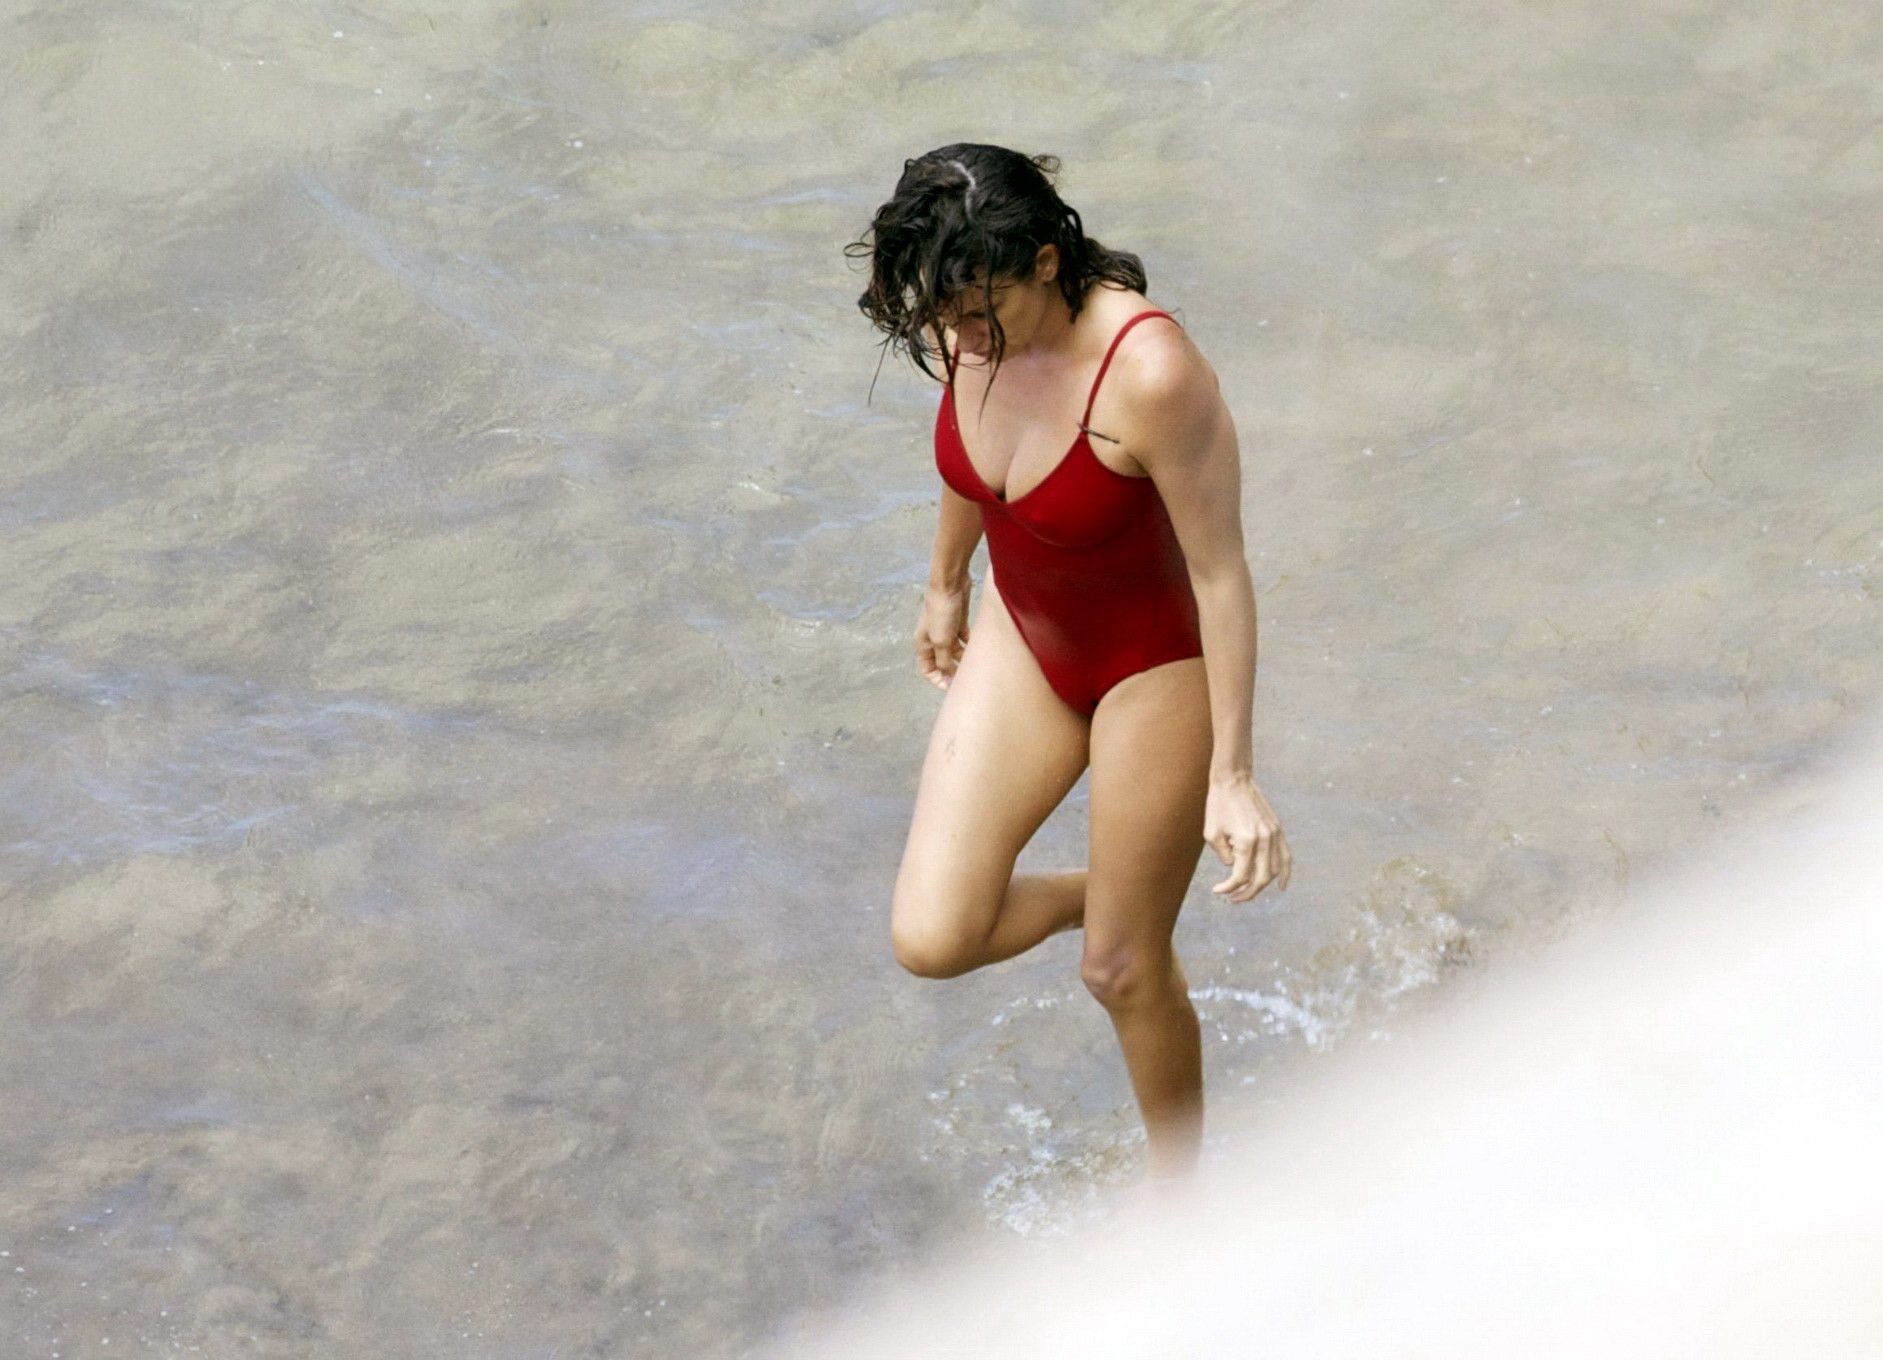 Penelope cruz mostrando pokies en una playa con un sexy traje de baño rojo
 #75192187